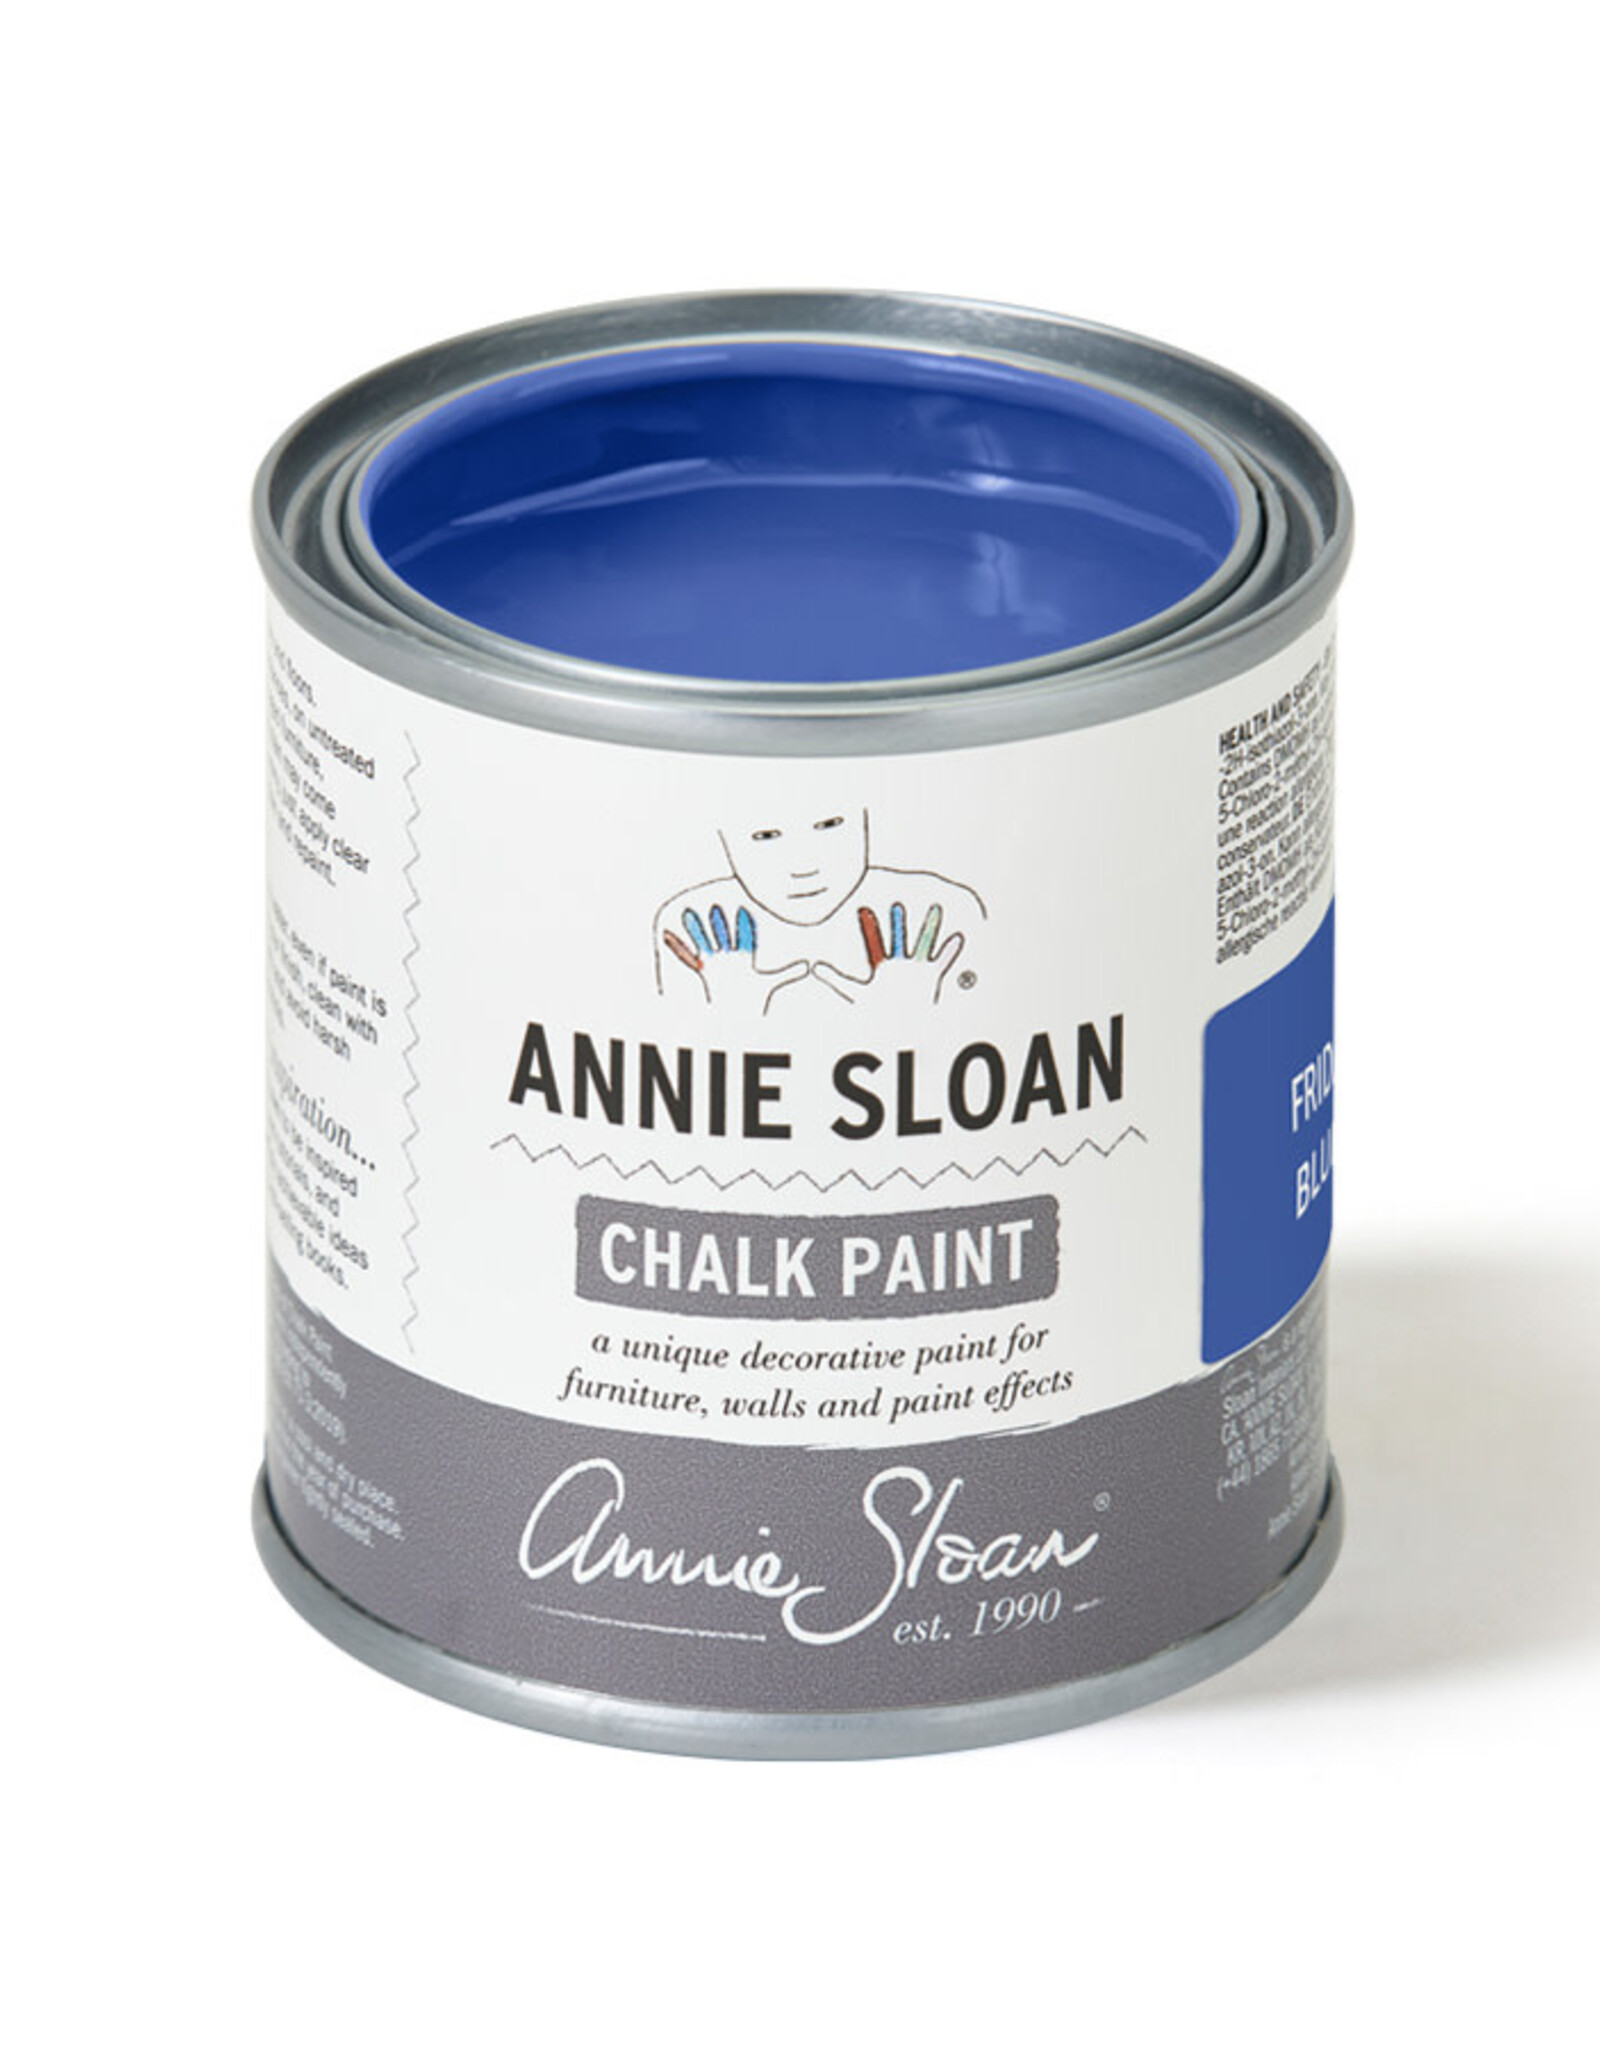 Annie Sloan Frida Blue 120Ml Chalk Paint® by Annie Sloan